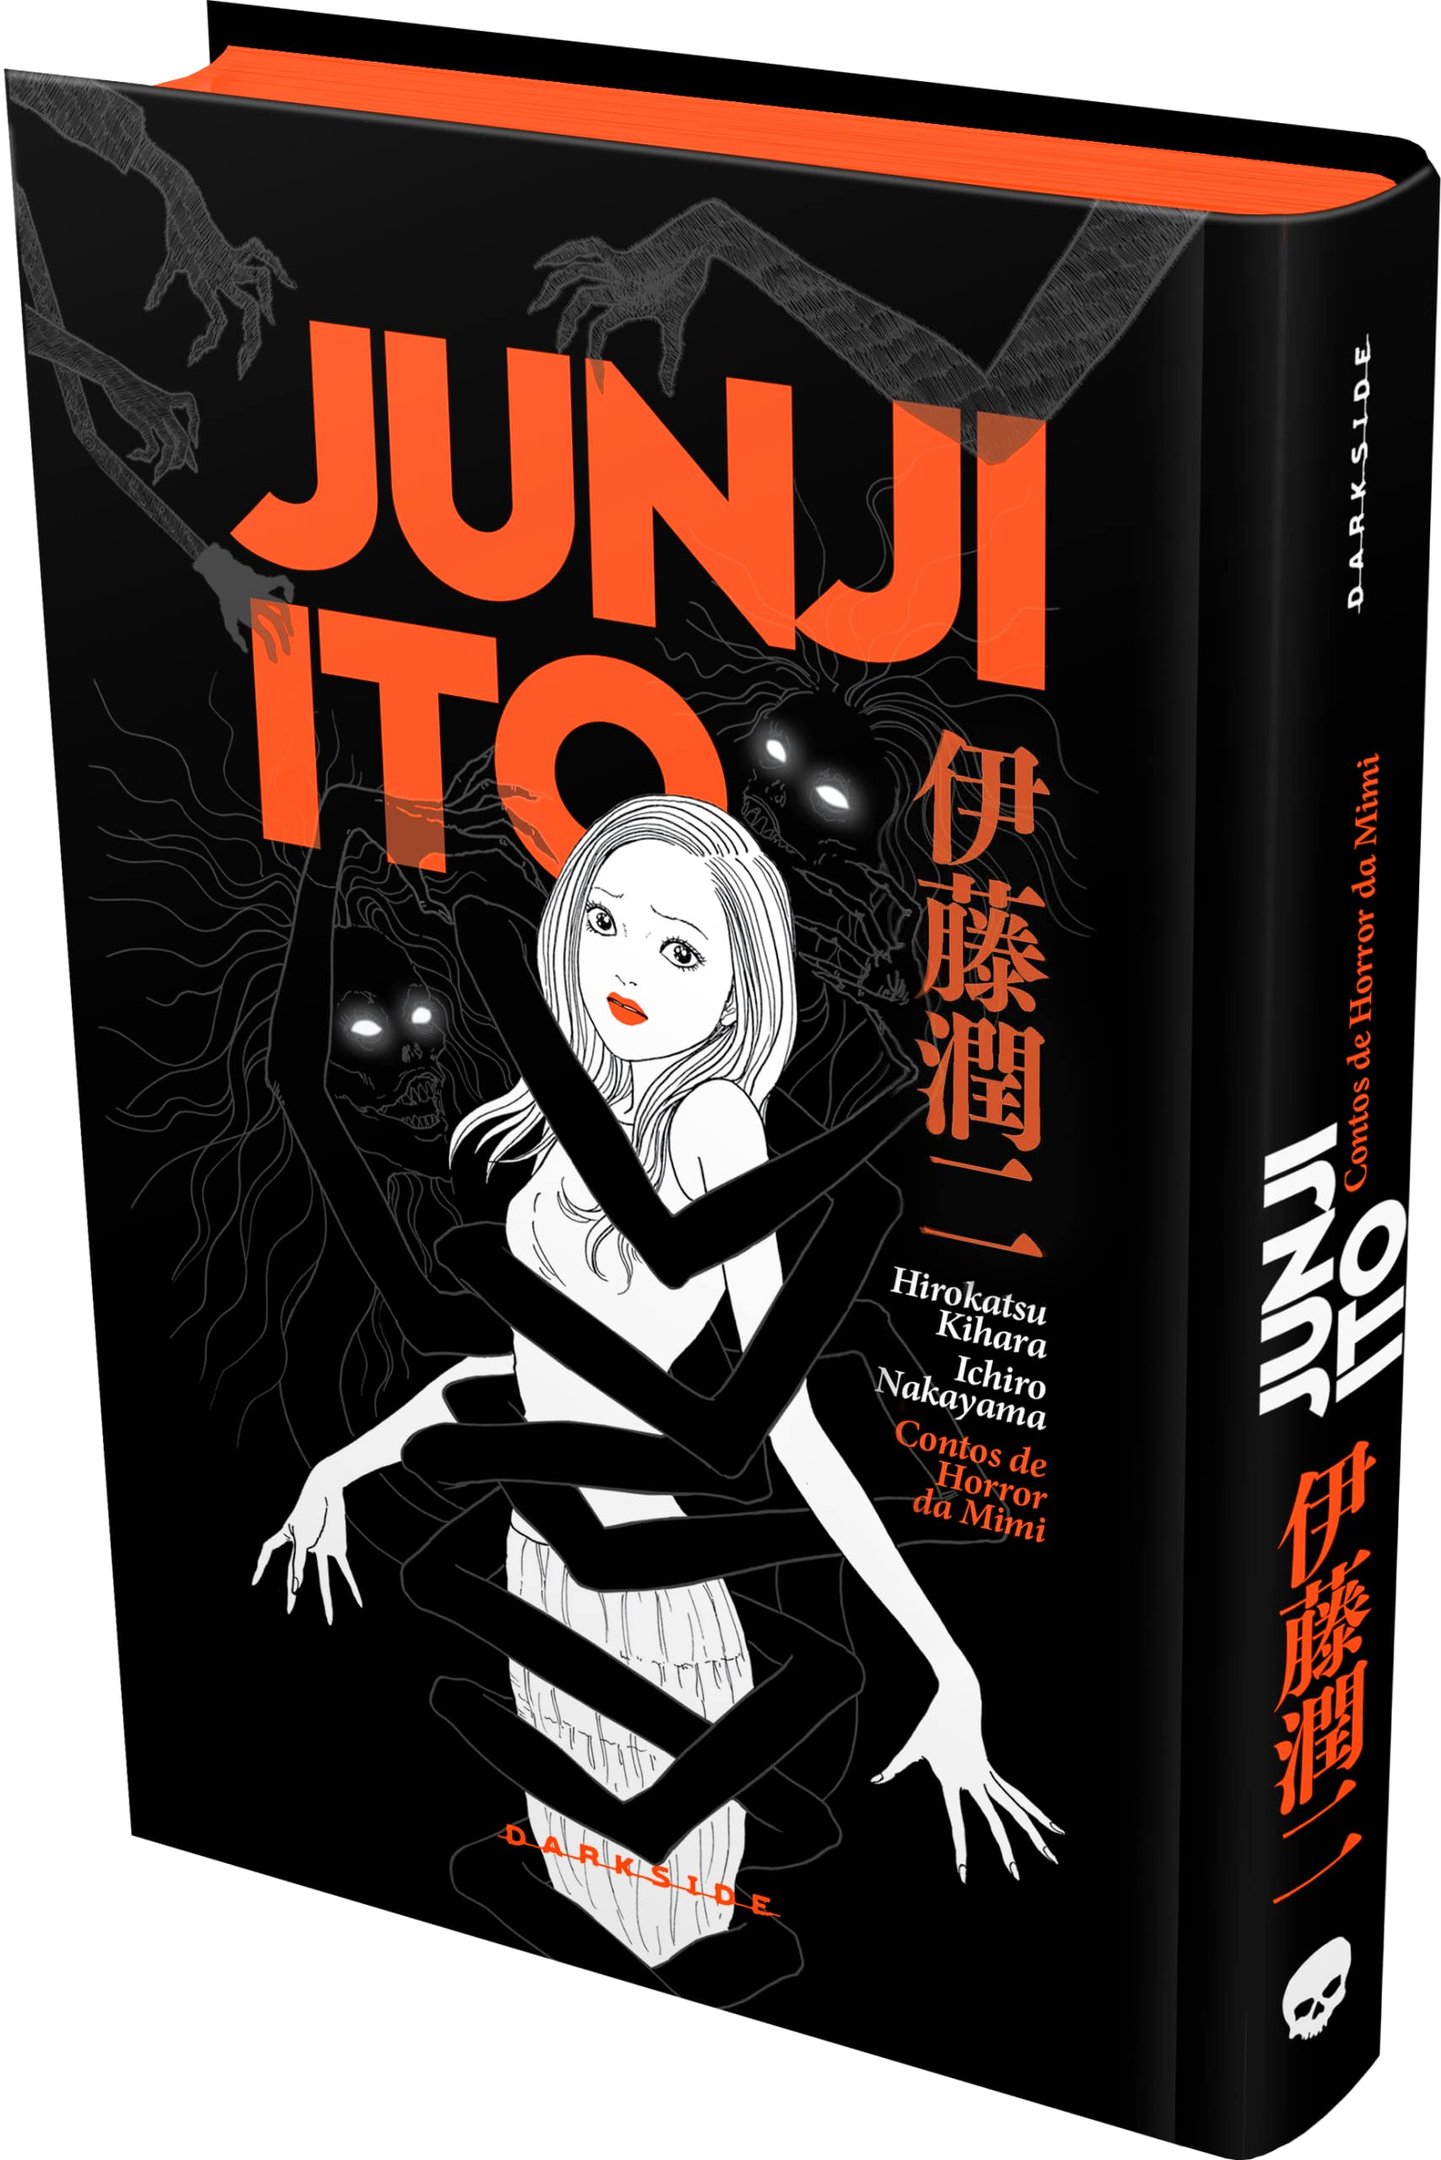 Junji Ito Maniac: Netflix anuncia anime de obras do autor